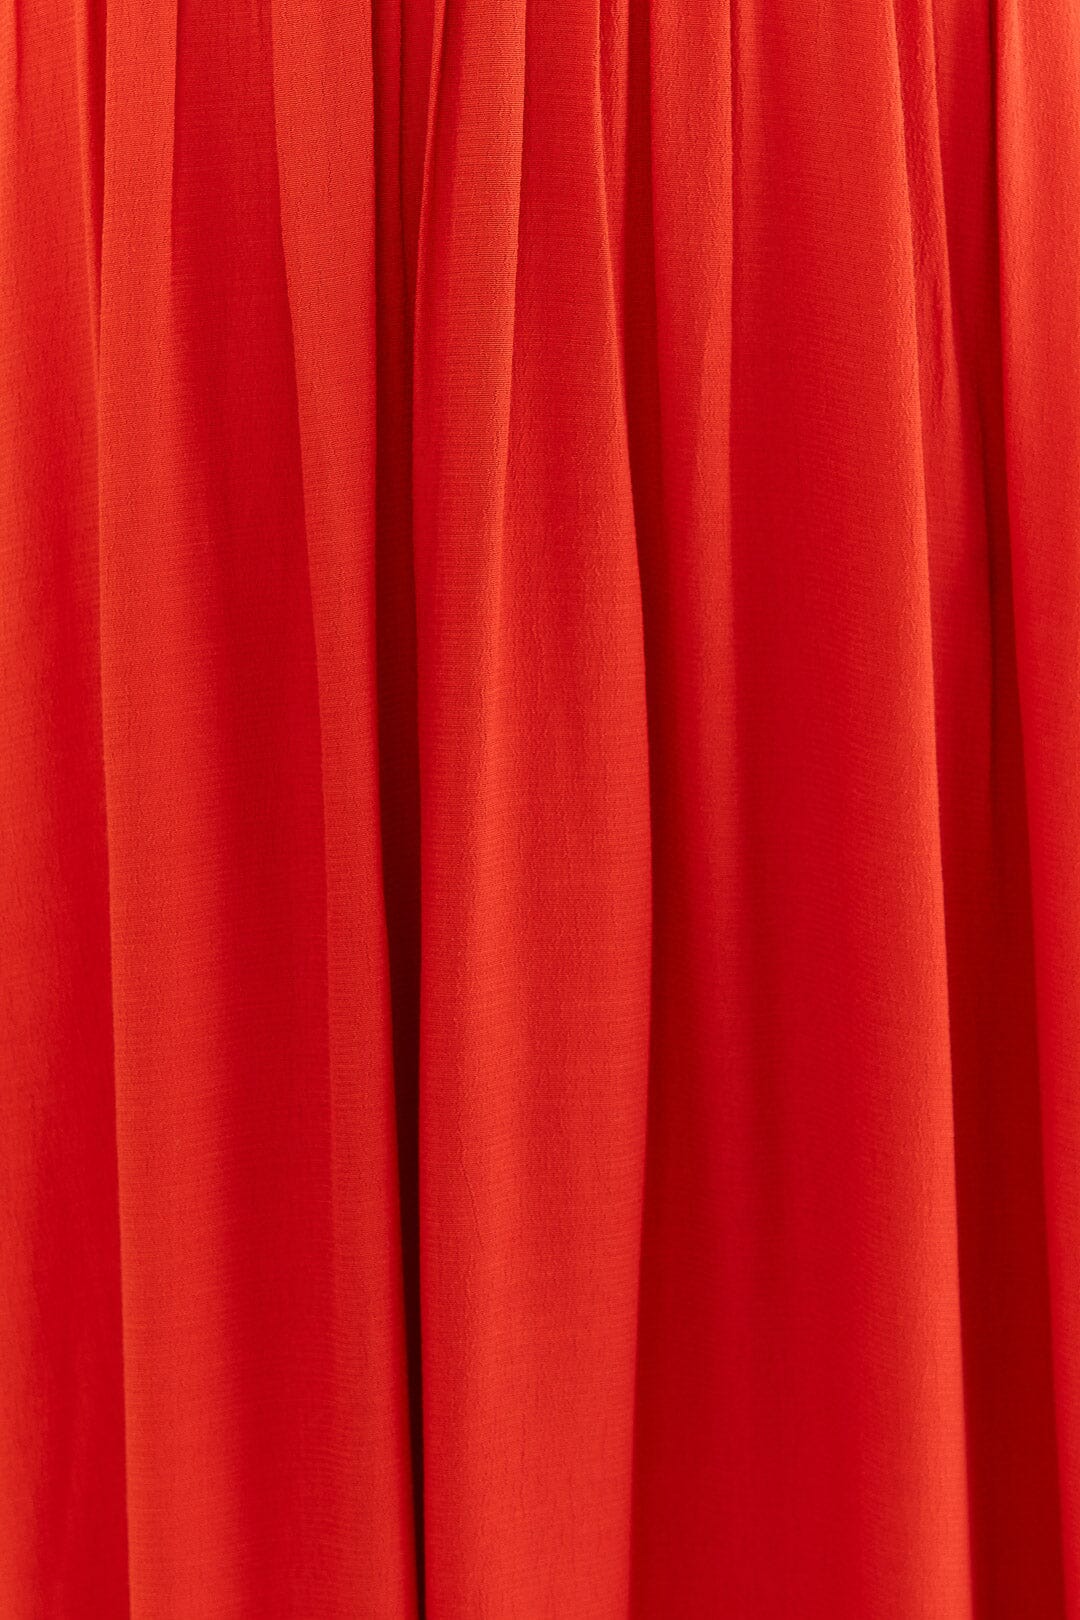 Red Bow Sleeveless Midi Dress